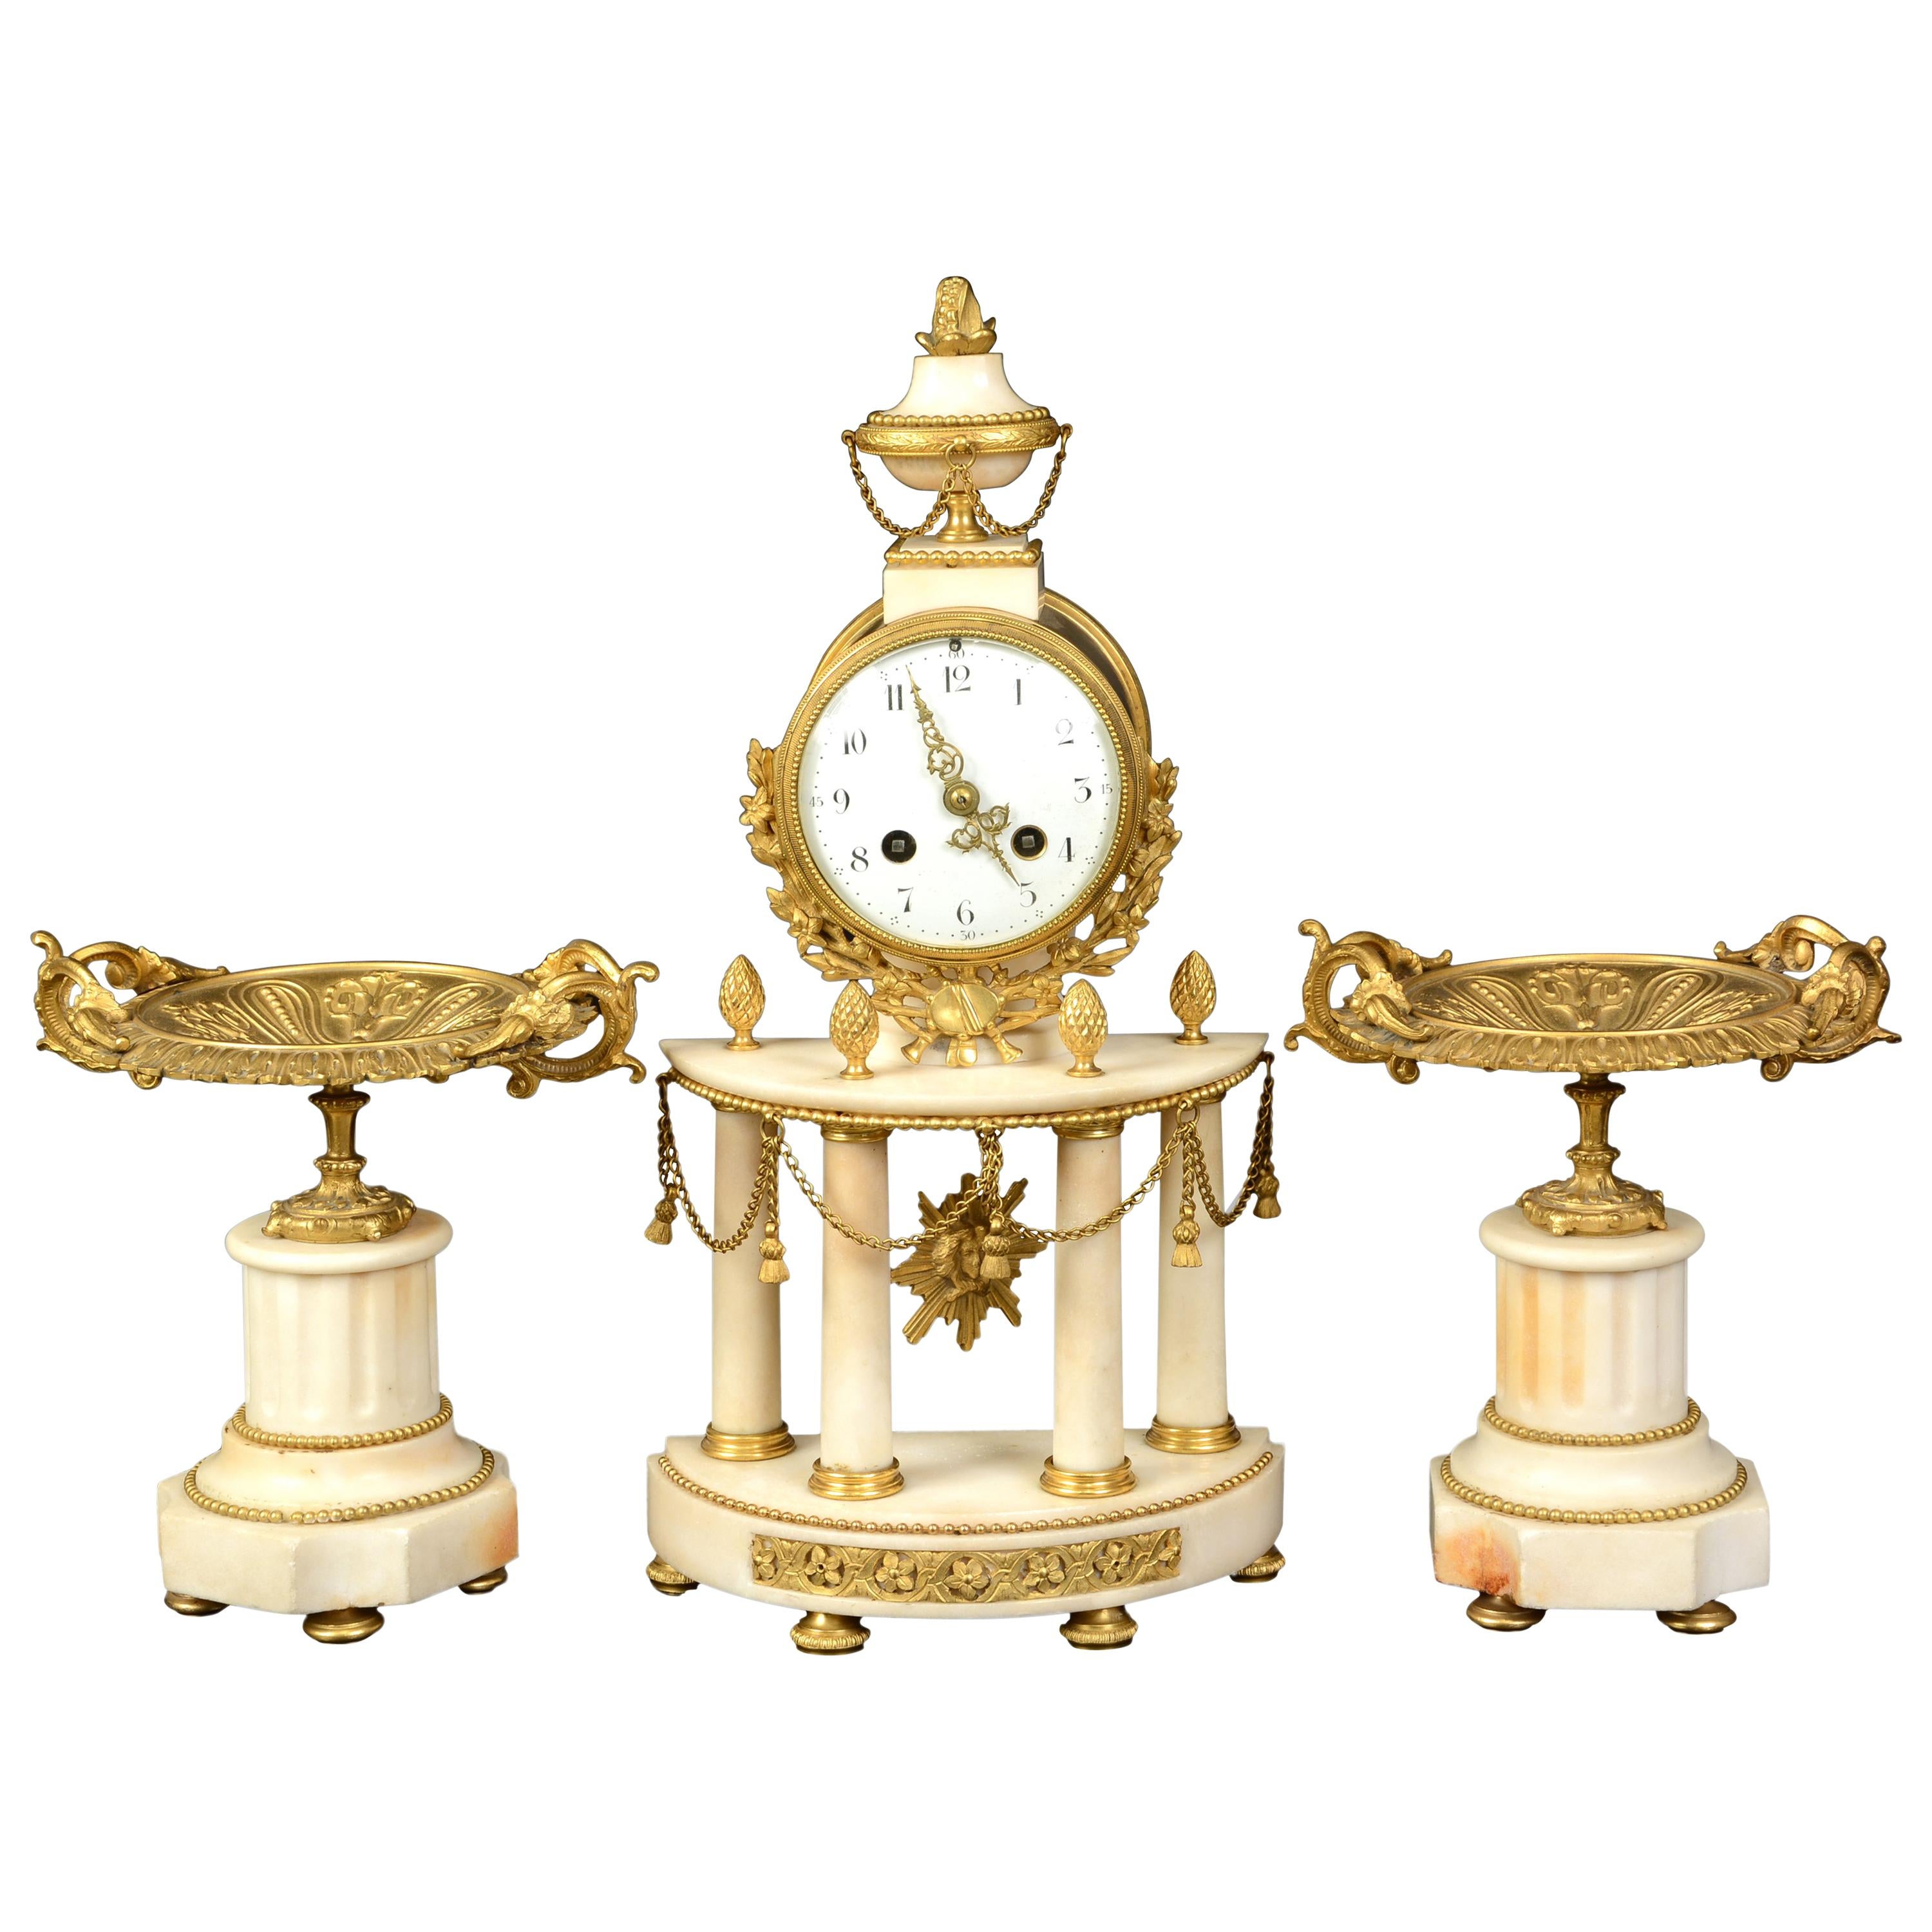 Garniture d'horloge de style Louis XVI, marbre et bronze doré, XIXe siècle